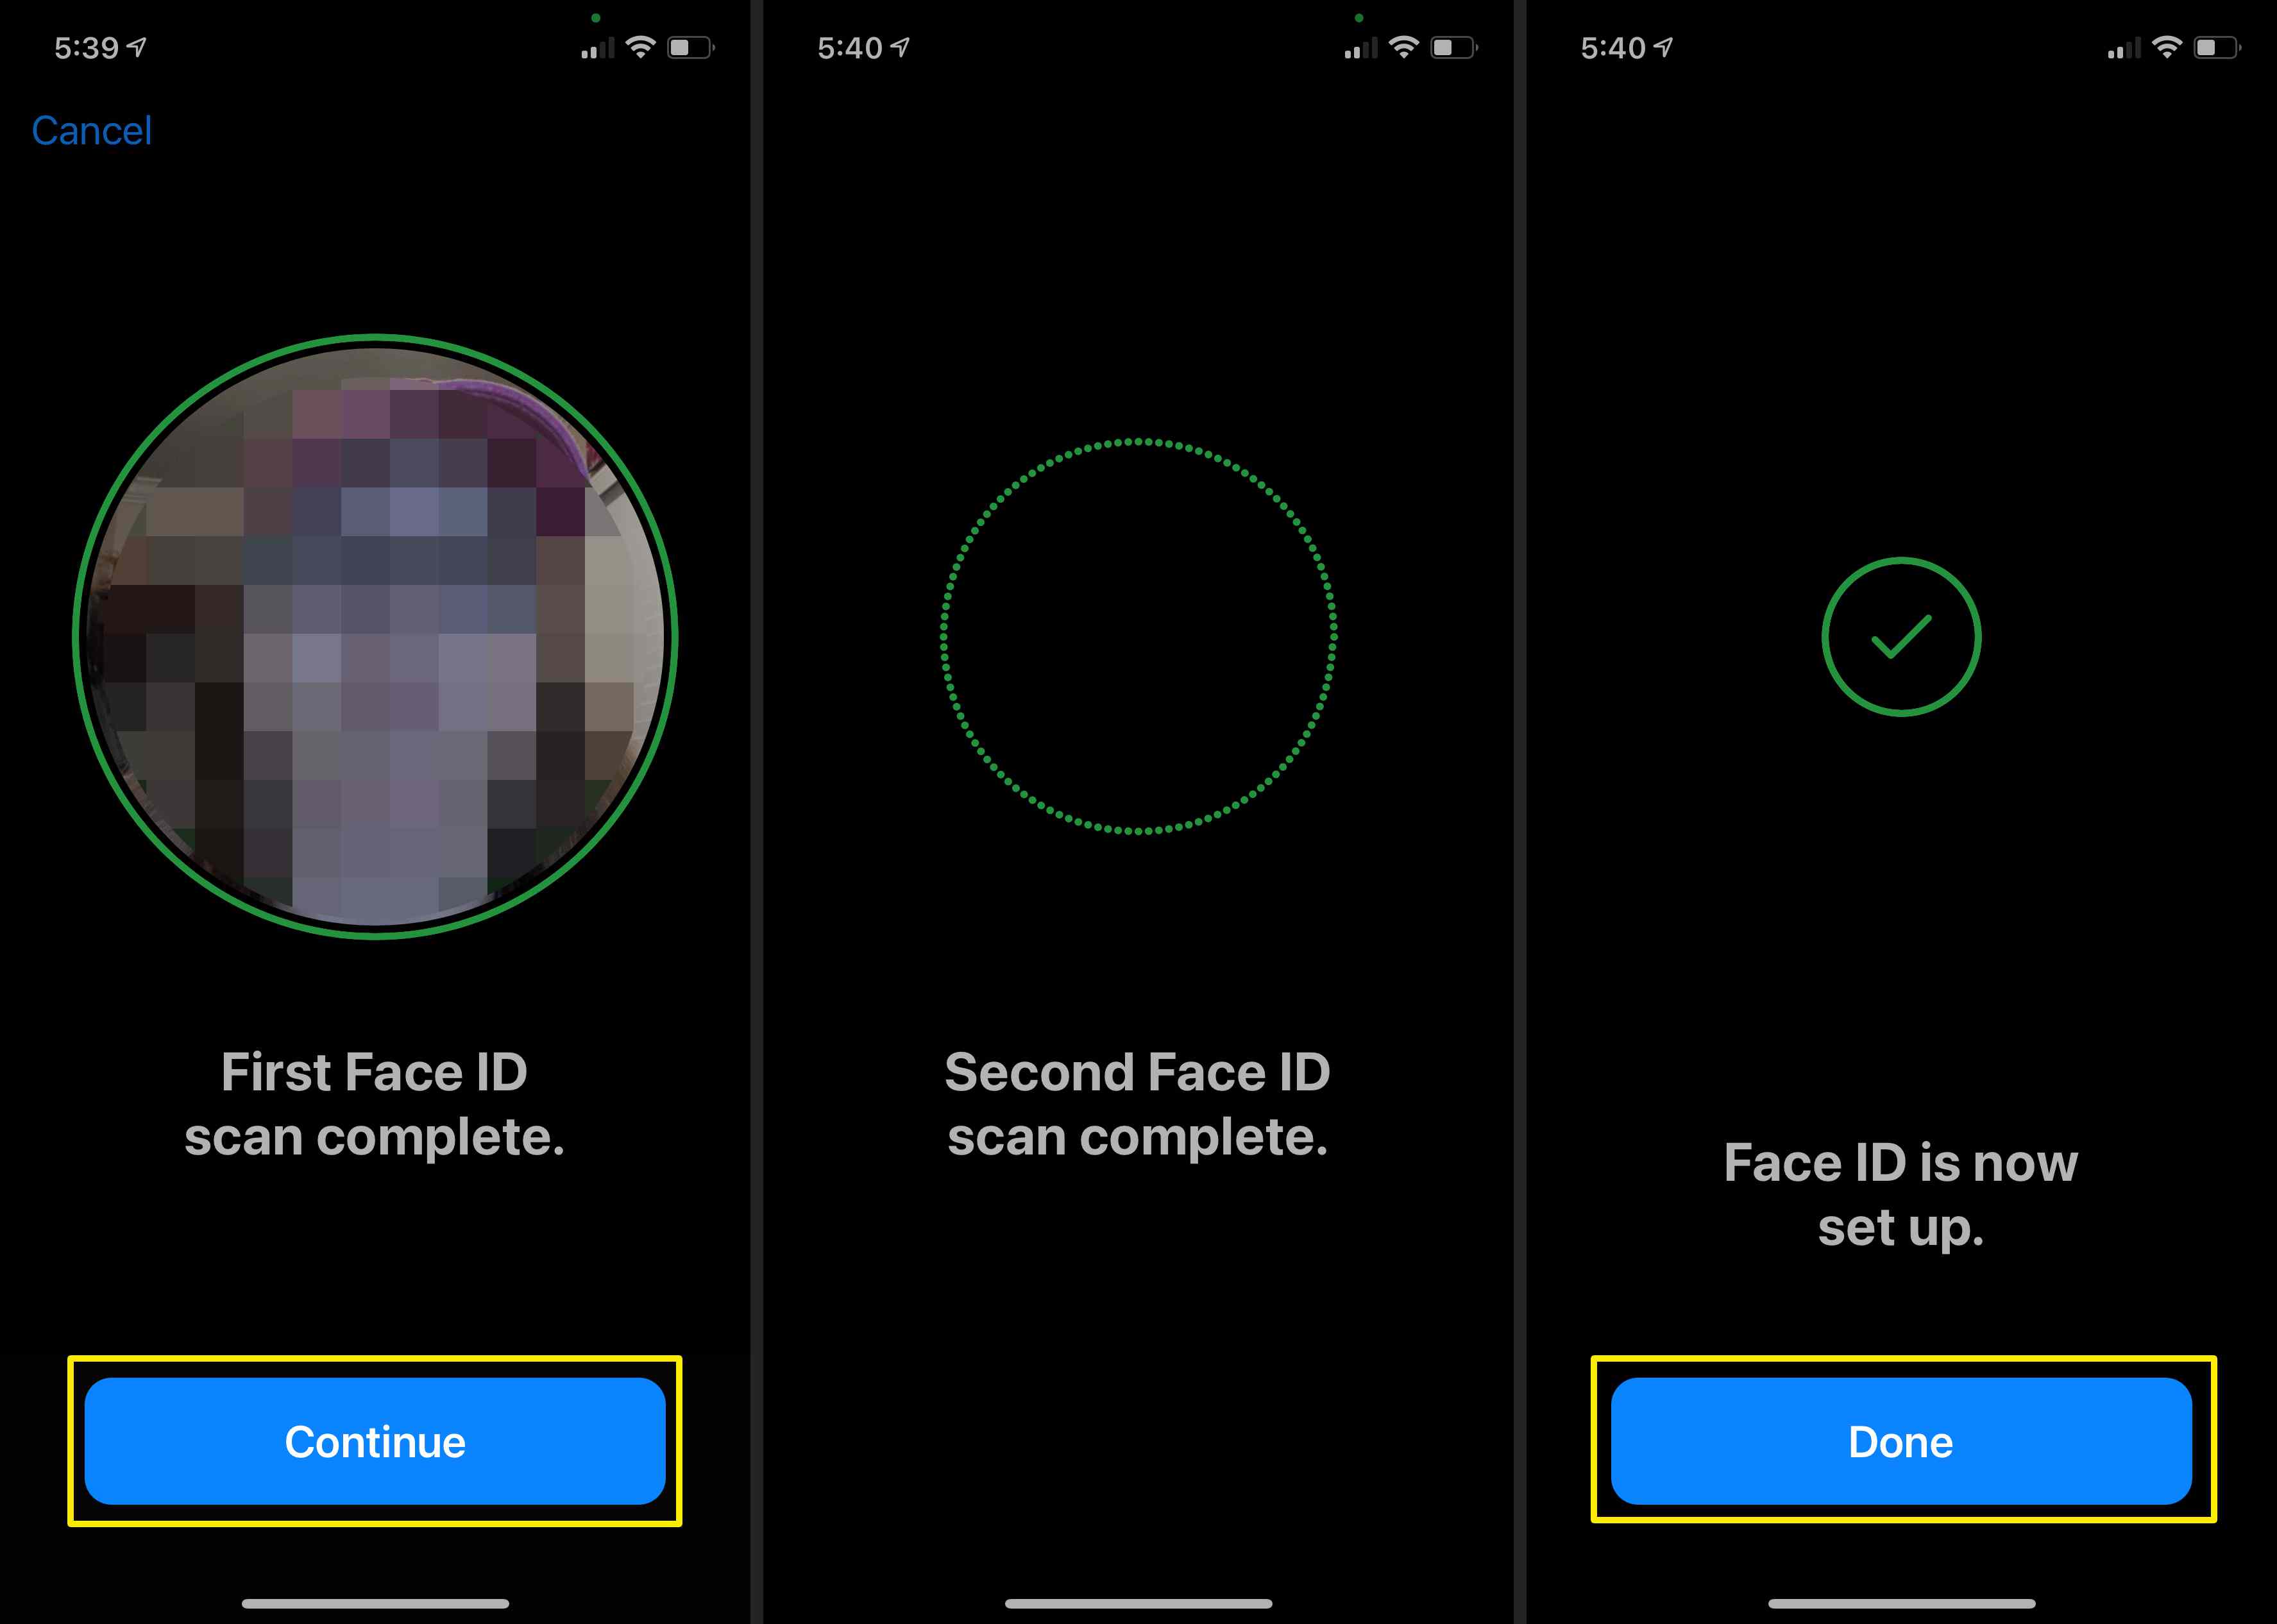 Schermafbeeldingen van het voltooien van de gezichtsscan voor een alternatieve weergave op de iPhone.